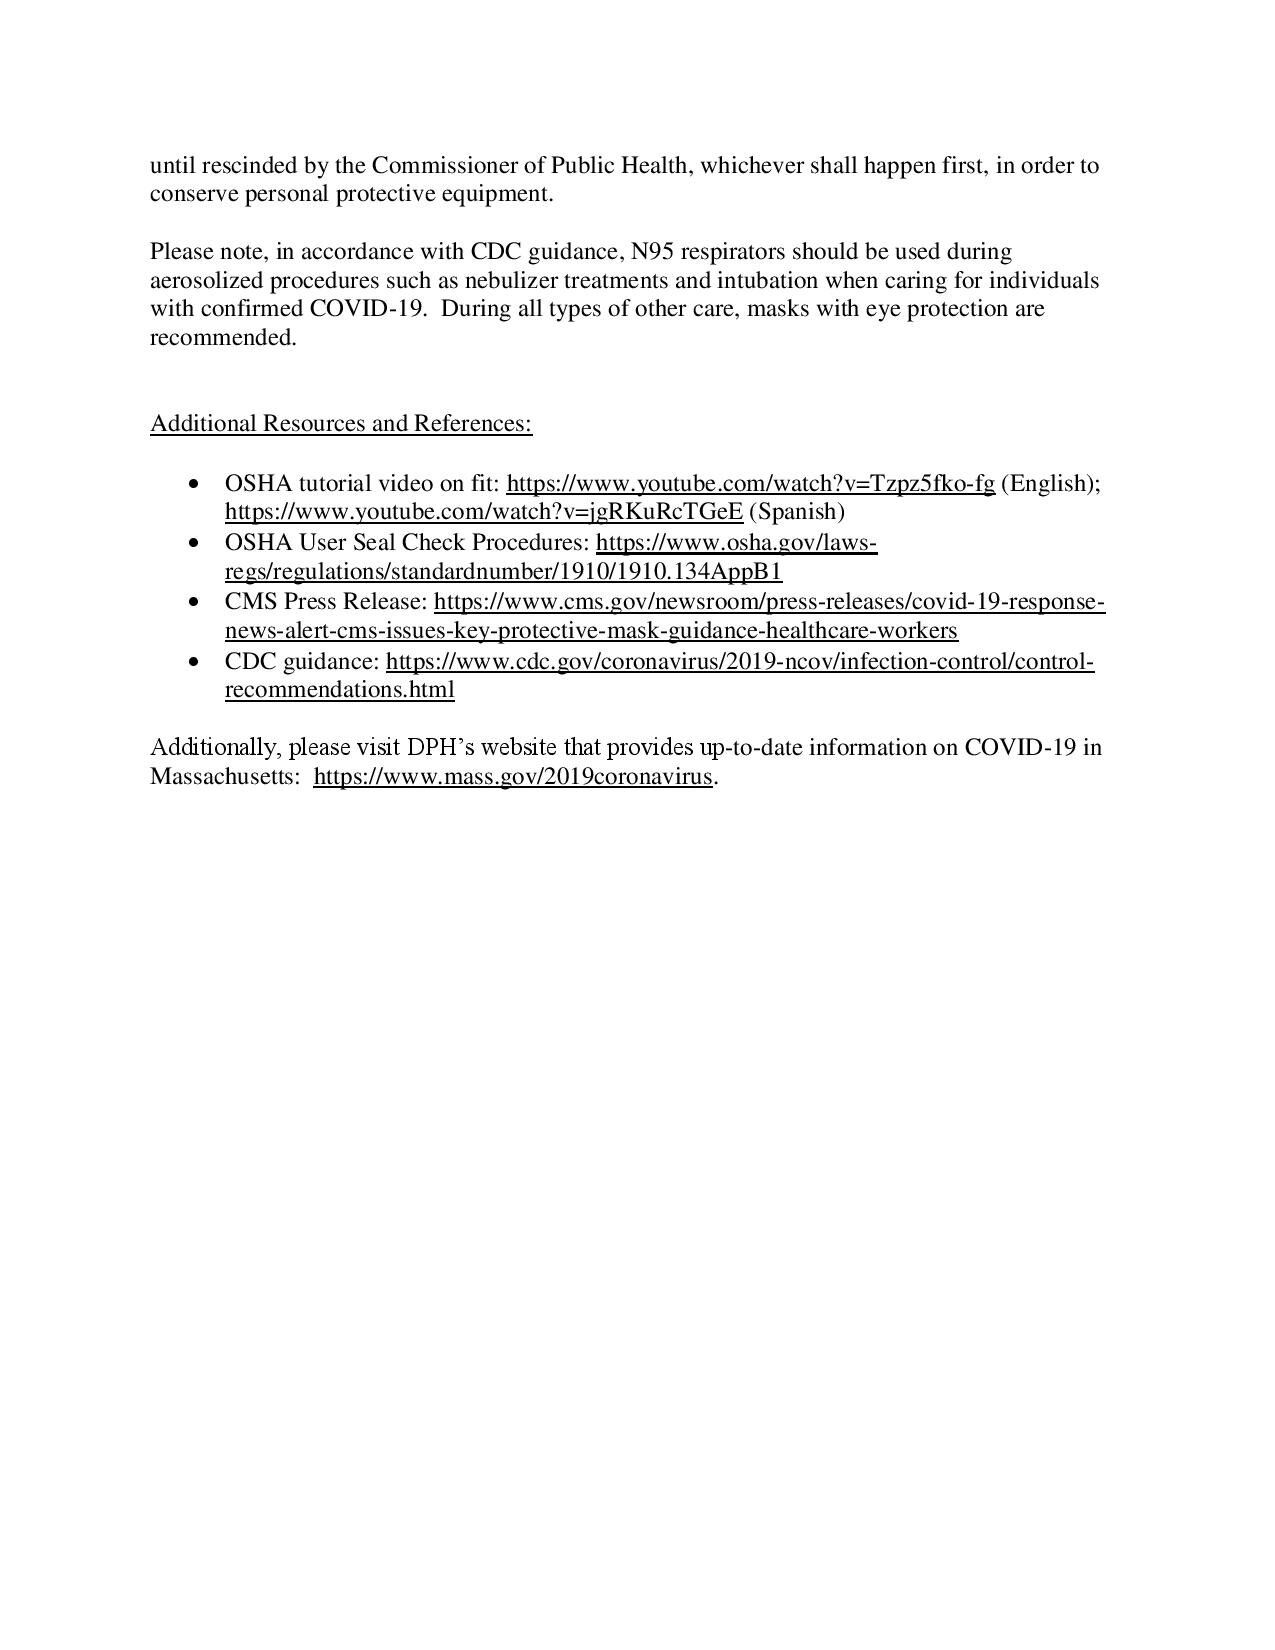 N95 fit testing guidance_3.30.2020-page-002.jpg